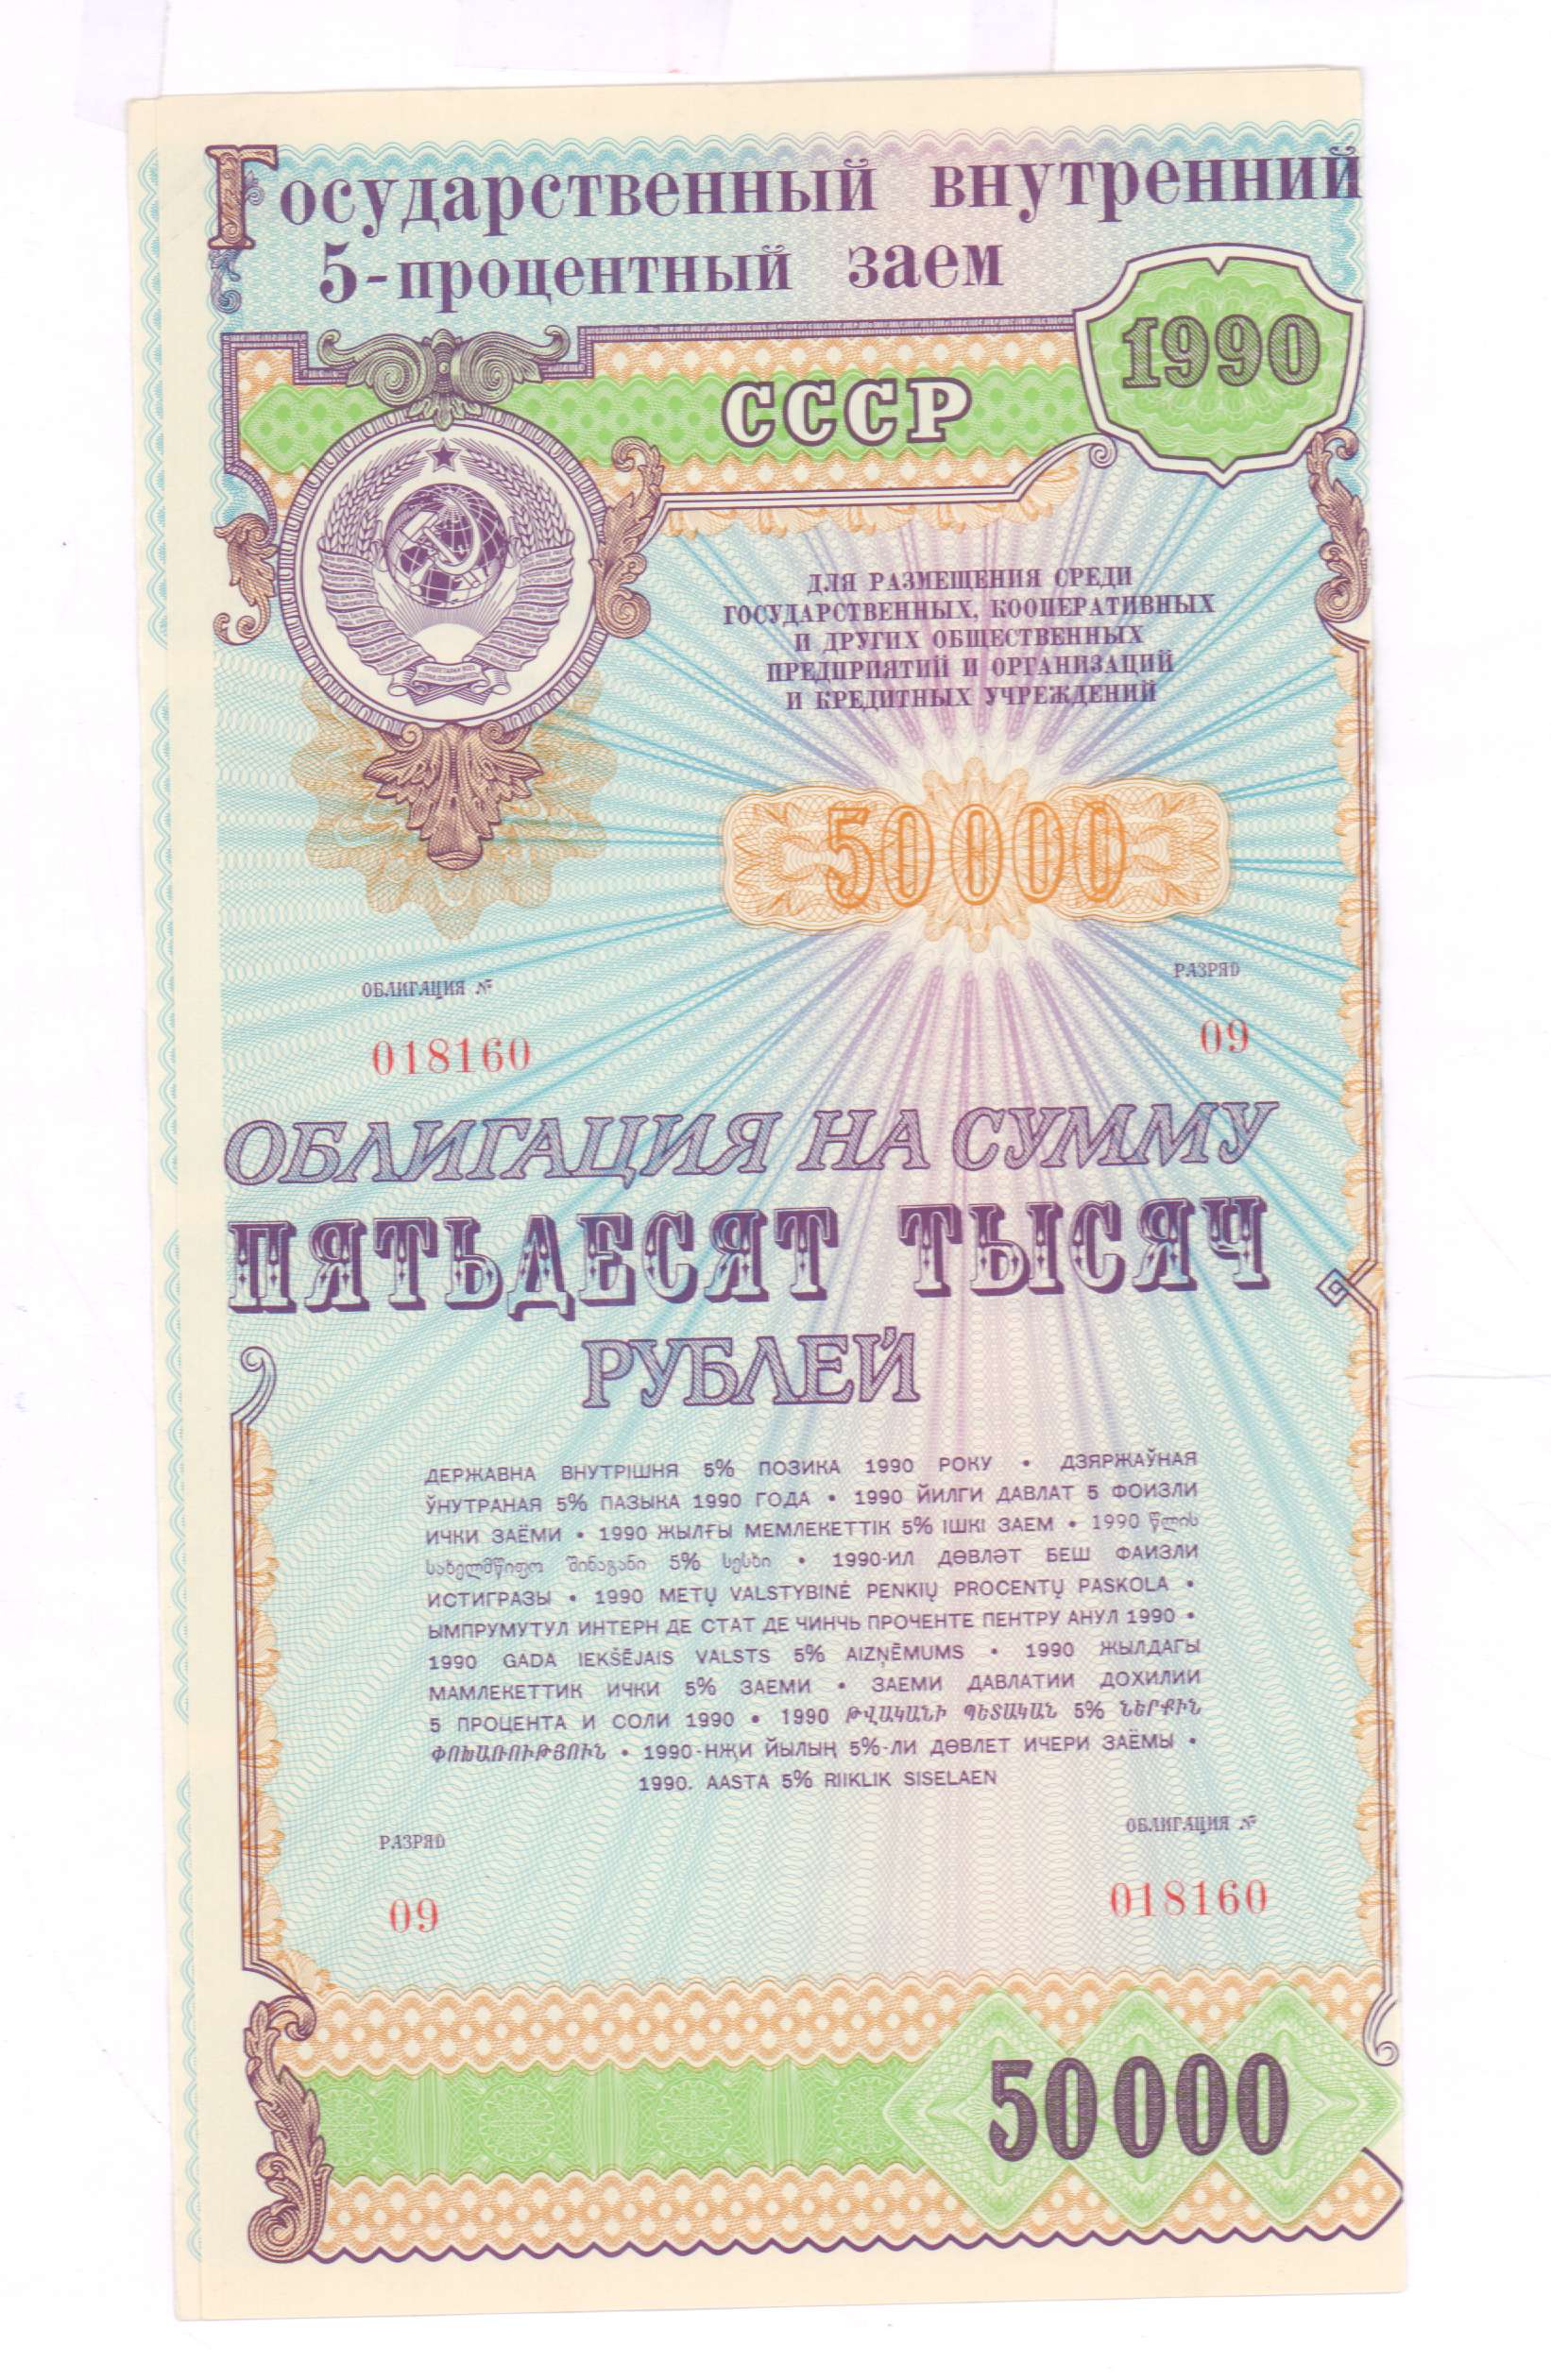 Кредит на сумму 50000. Облигация. Облигация на 50000 рублей 1990 года. Облигации 1990. Ценные бумаги СССР.